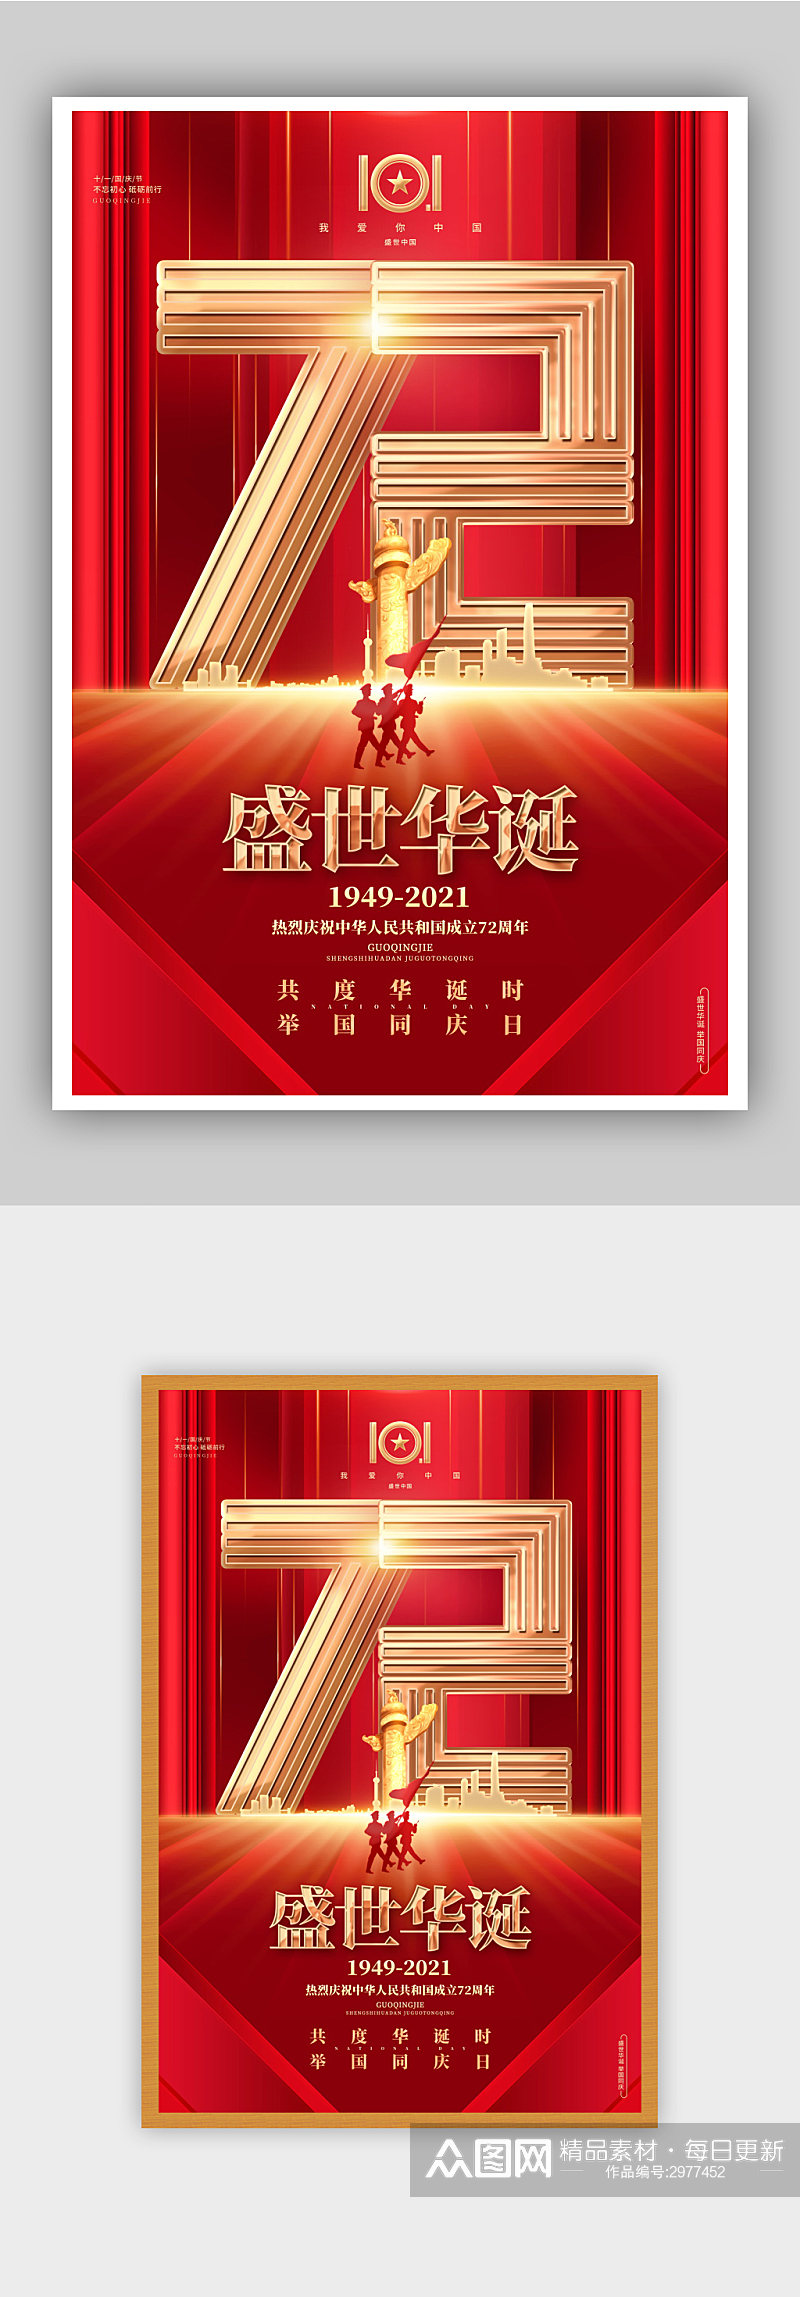 国庆节建国72周年宣传海报素材